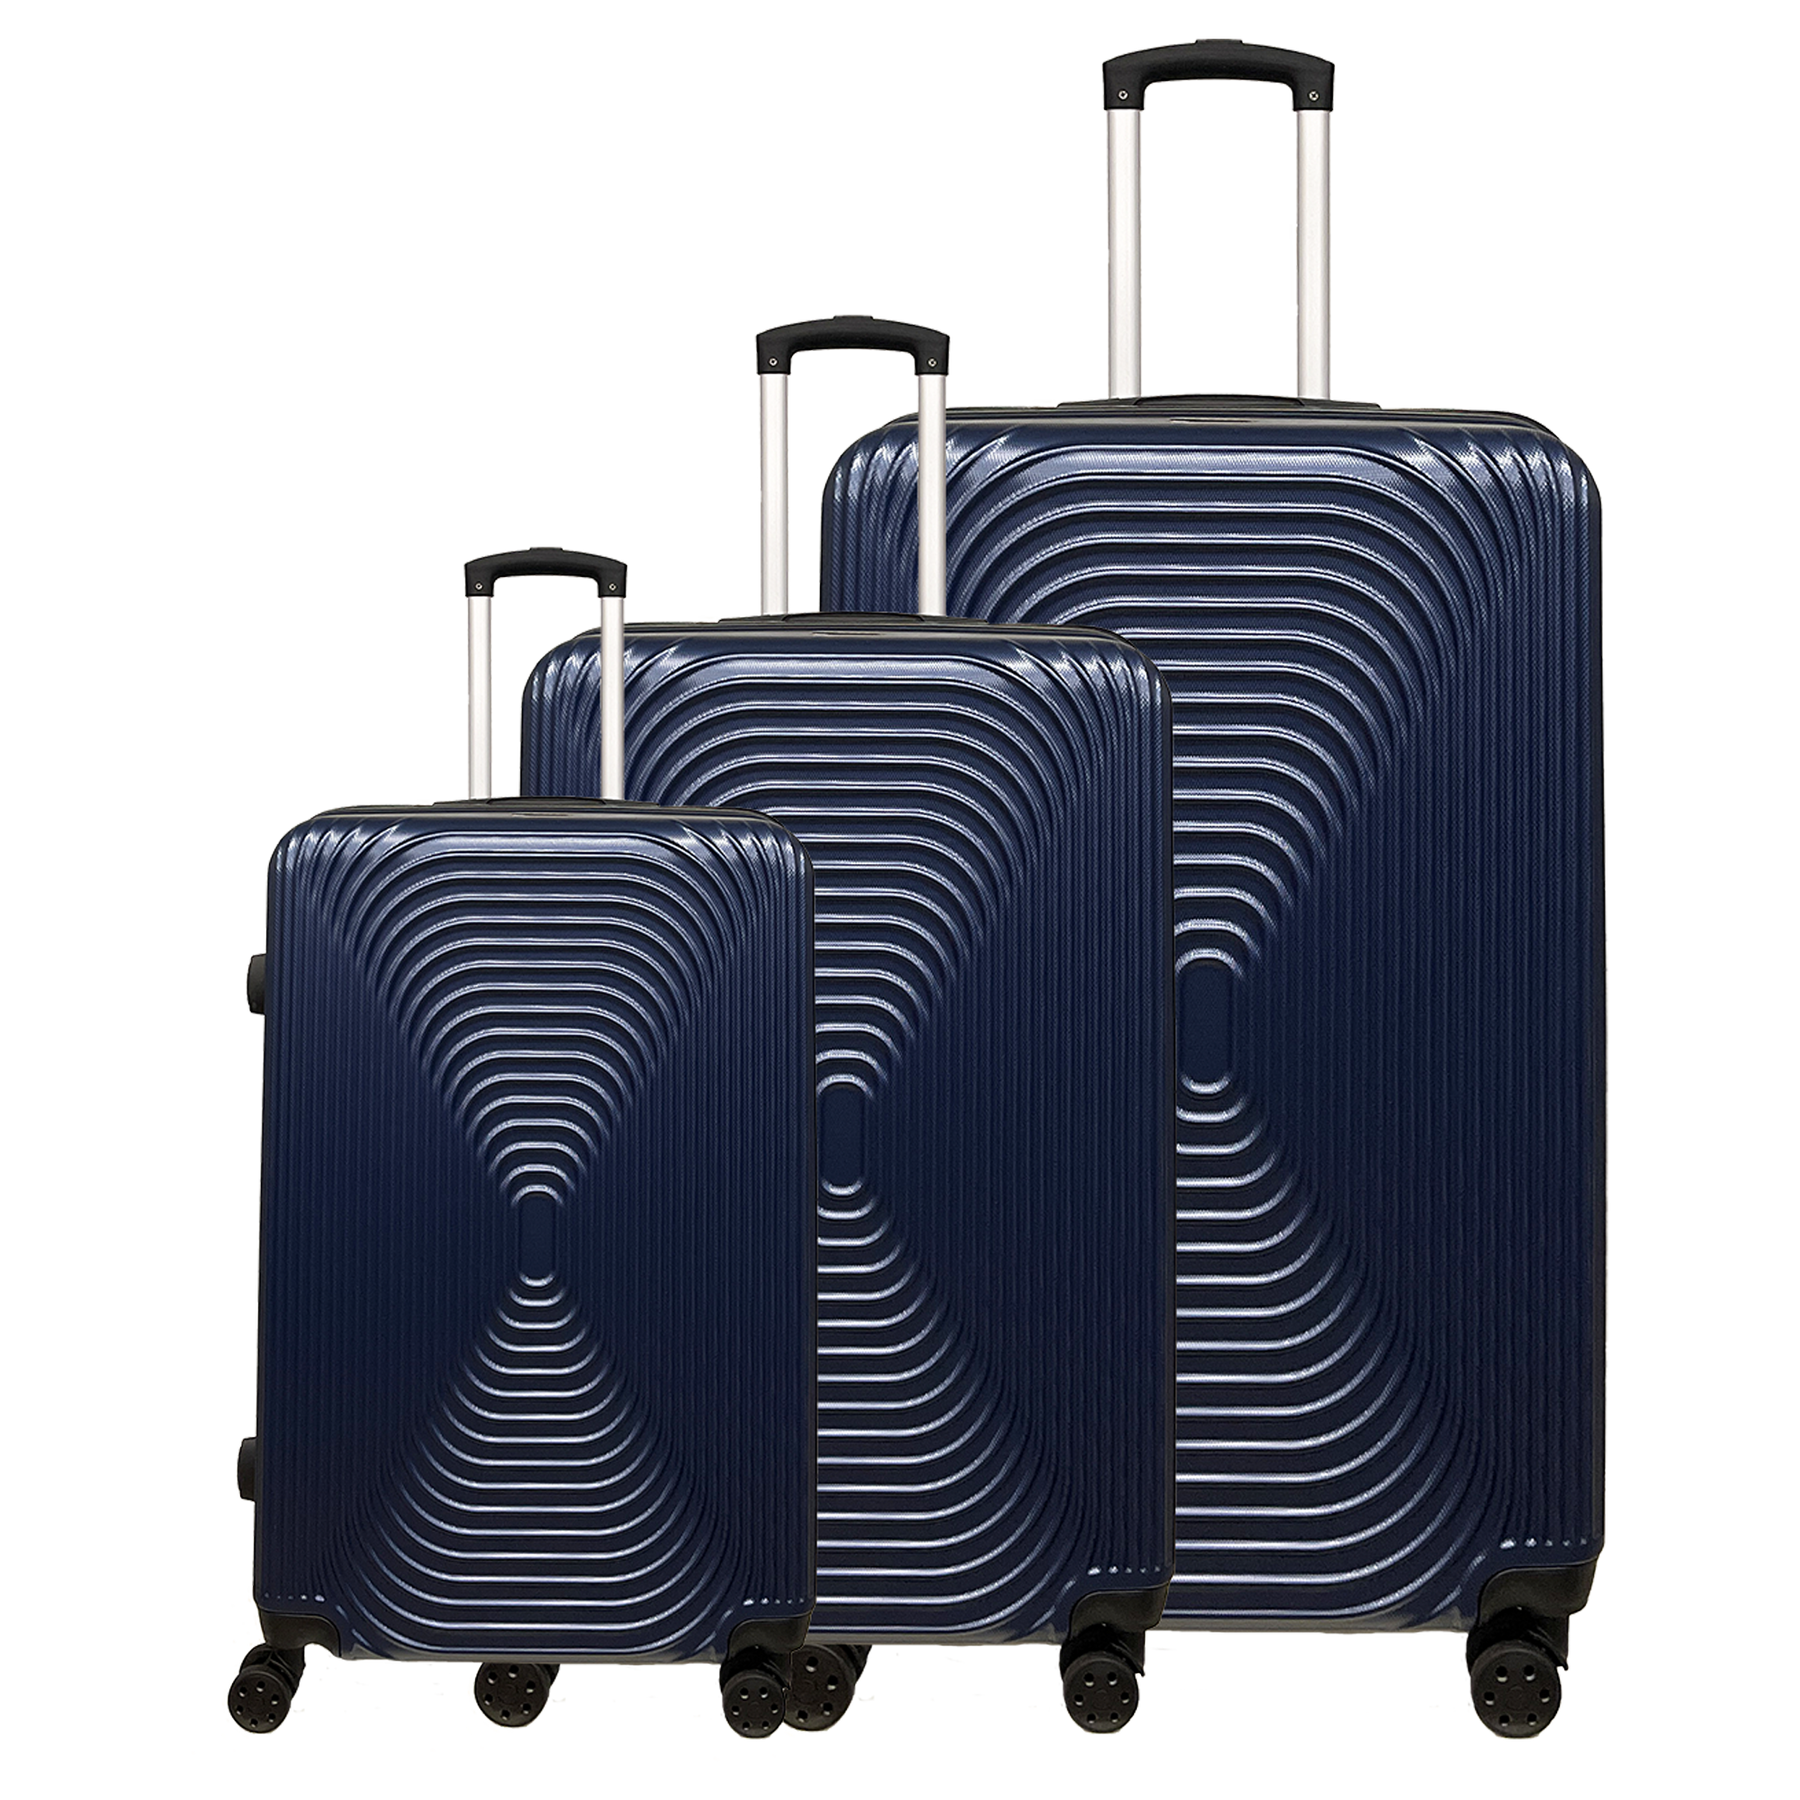 Ormi StshLine 3 kappaleen matkalaukkusetti - Kova, erittäin kevyt ABS-materiaali - Pieni 55 cm, Keski 65 cm ja Iso 75 cm.